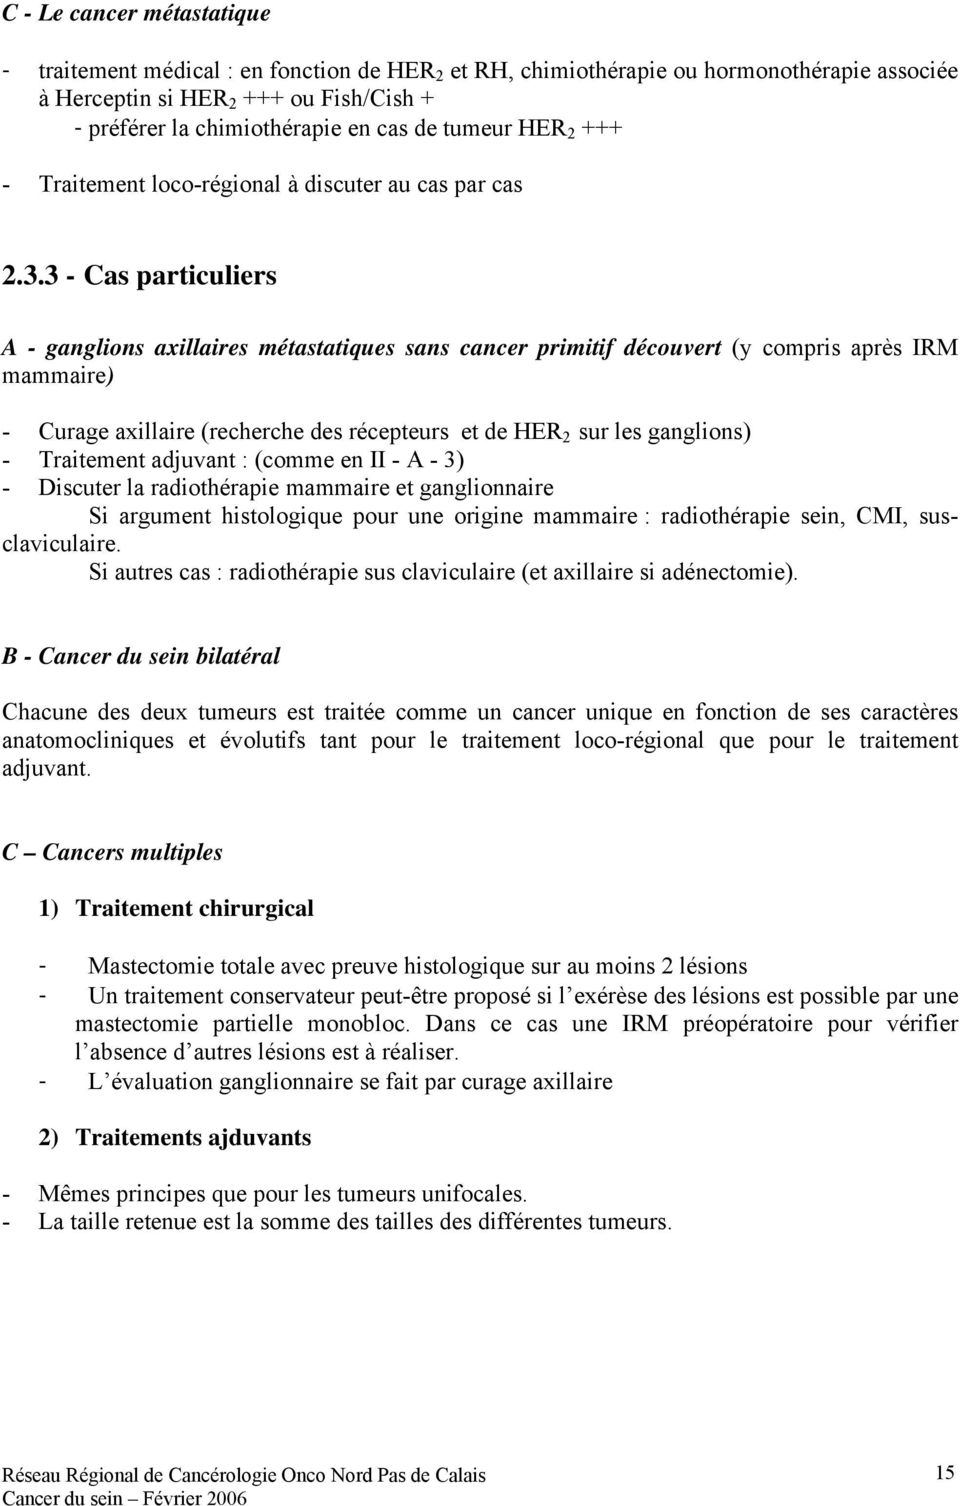 3 - Cas particuliers A - ganglions axillaires métastatiques sans cancer primitif découvert (y compris après IRM mammaire) - Curage axillaire (recherche des récepteurs et de HER 2 sur les ganglions) -